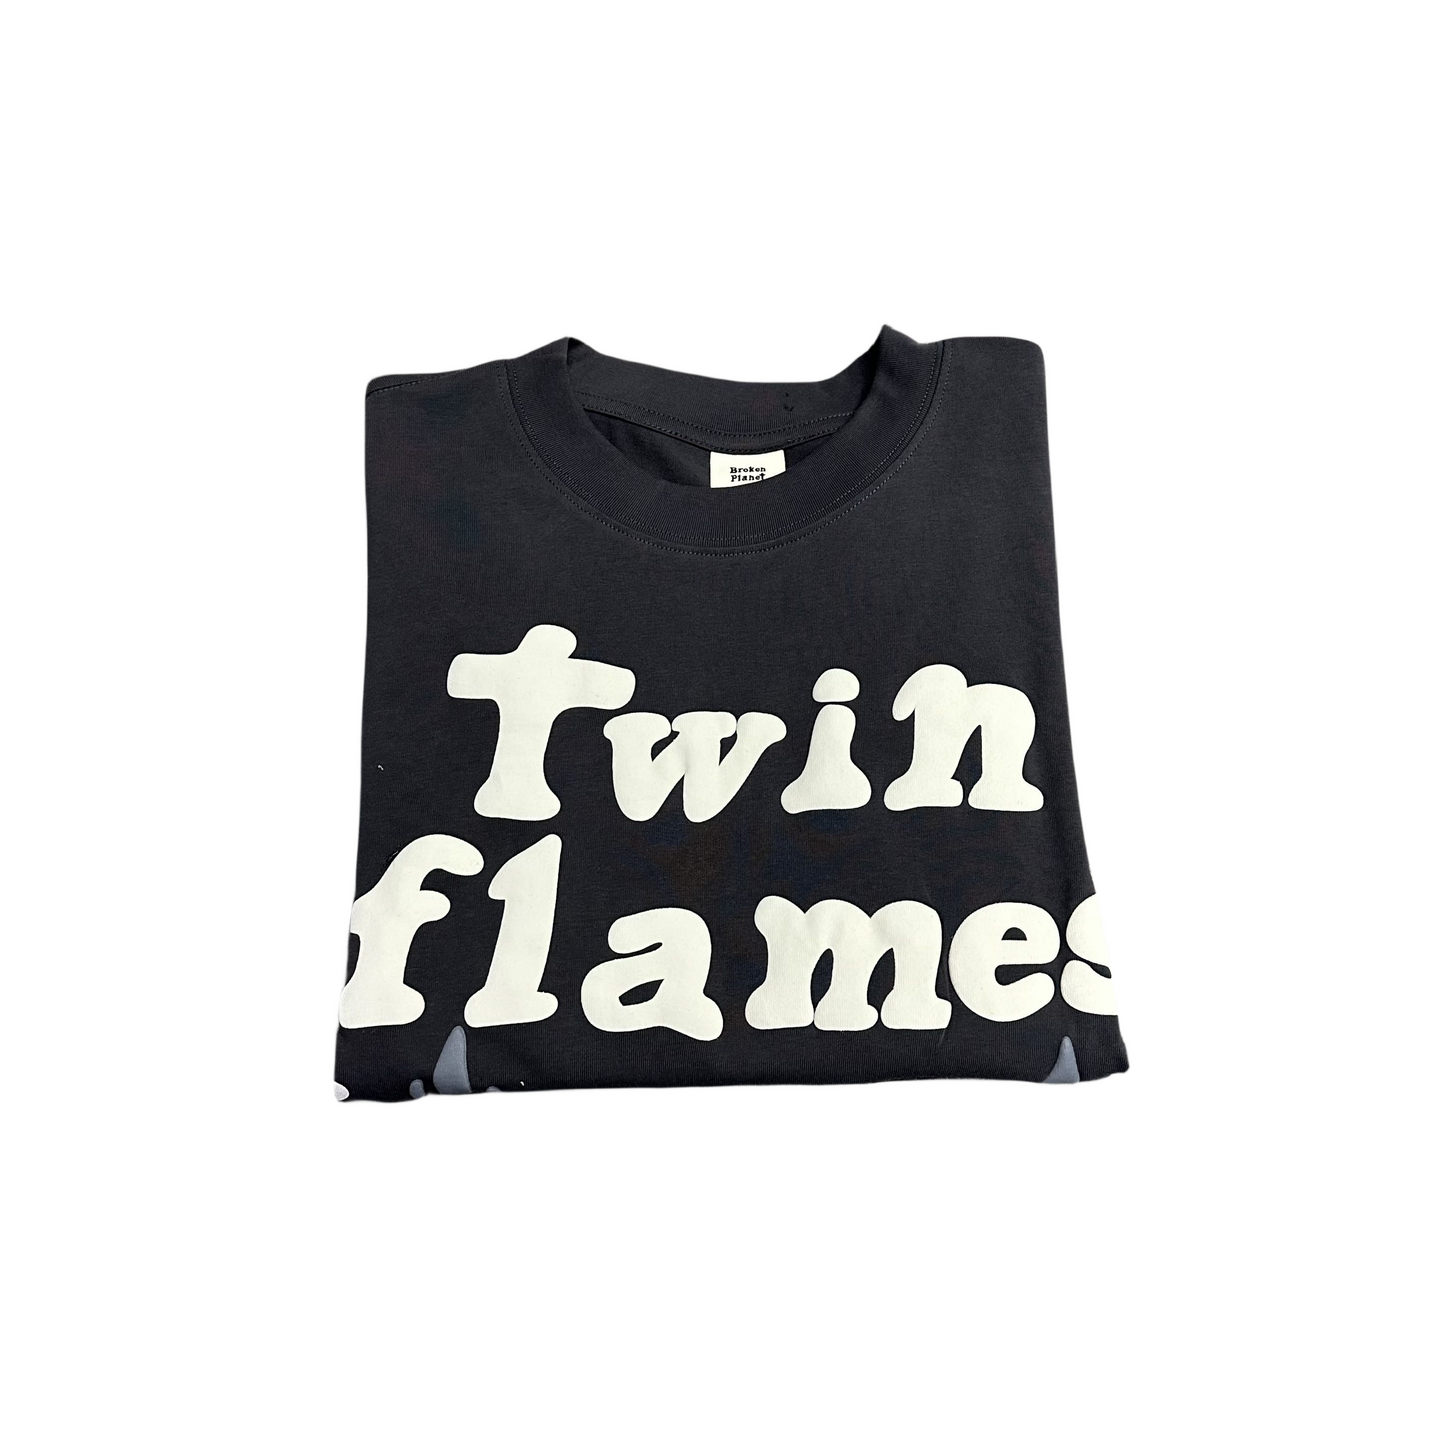 Broken Planet Men's Women's T-shirt 'twin flames' Tee